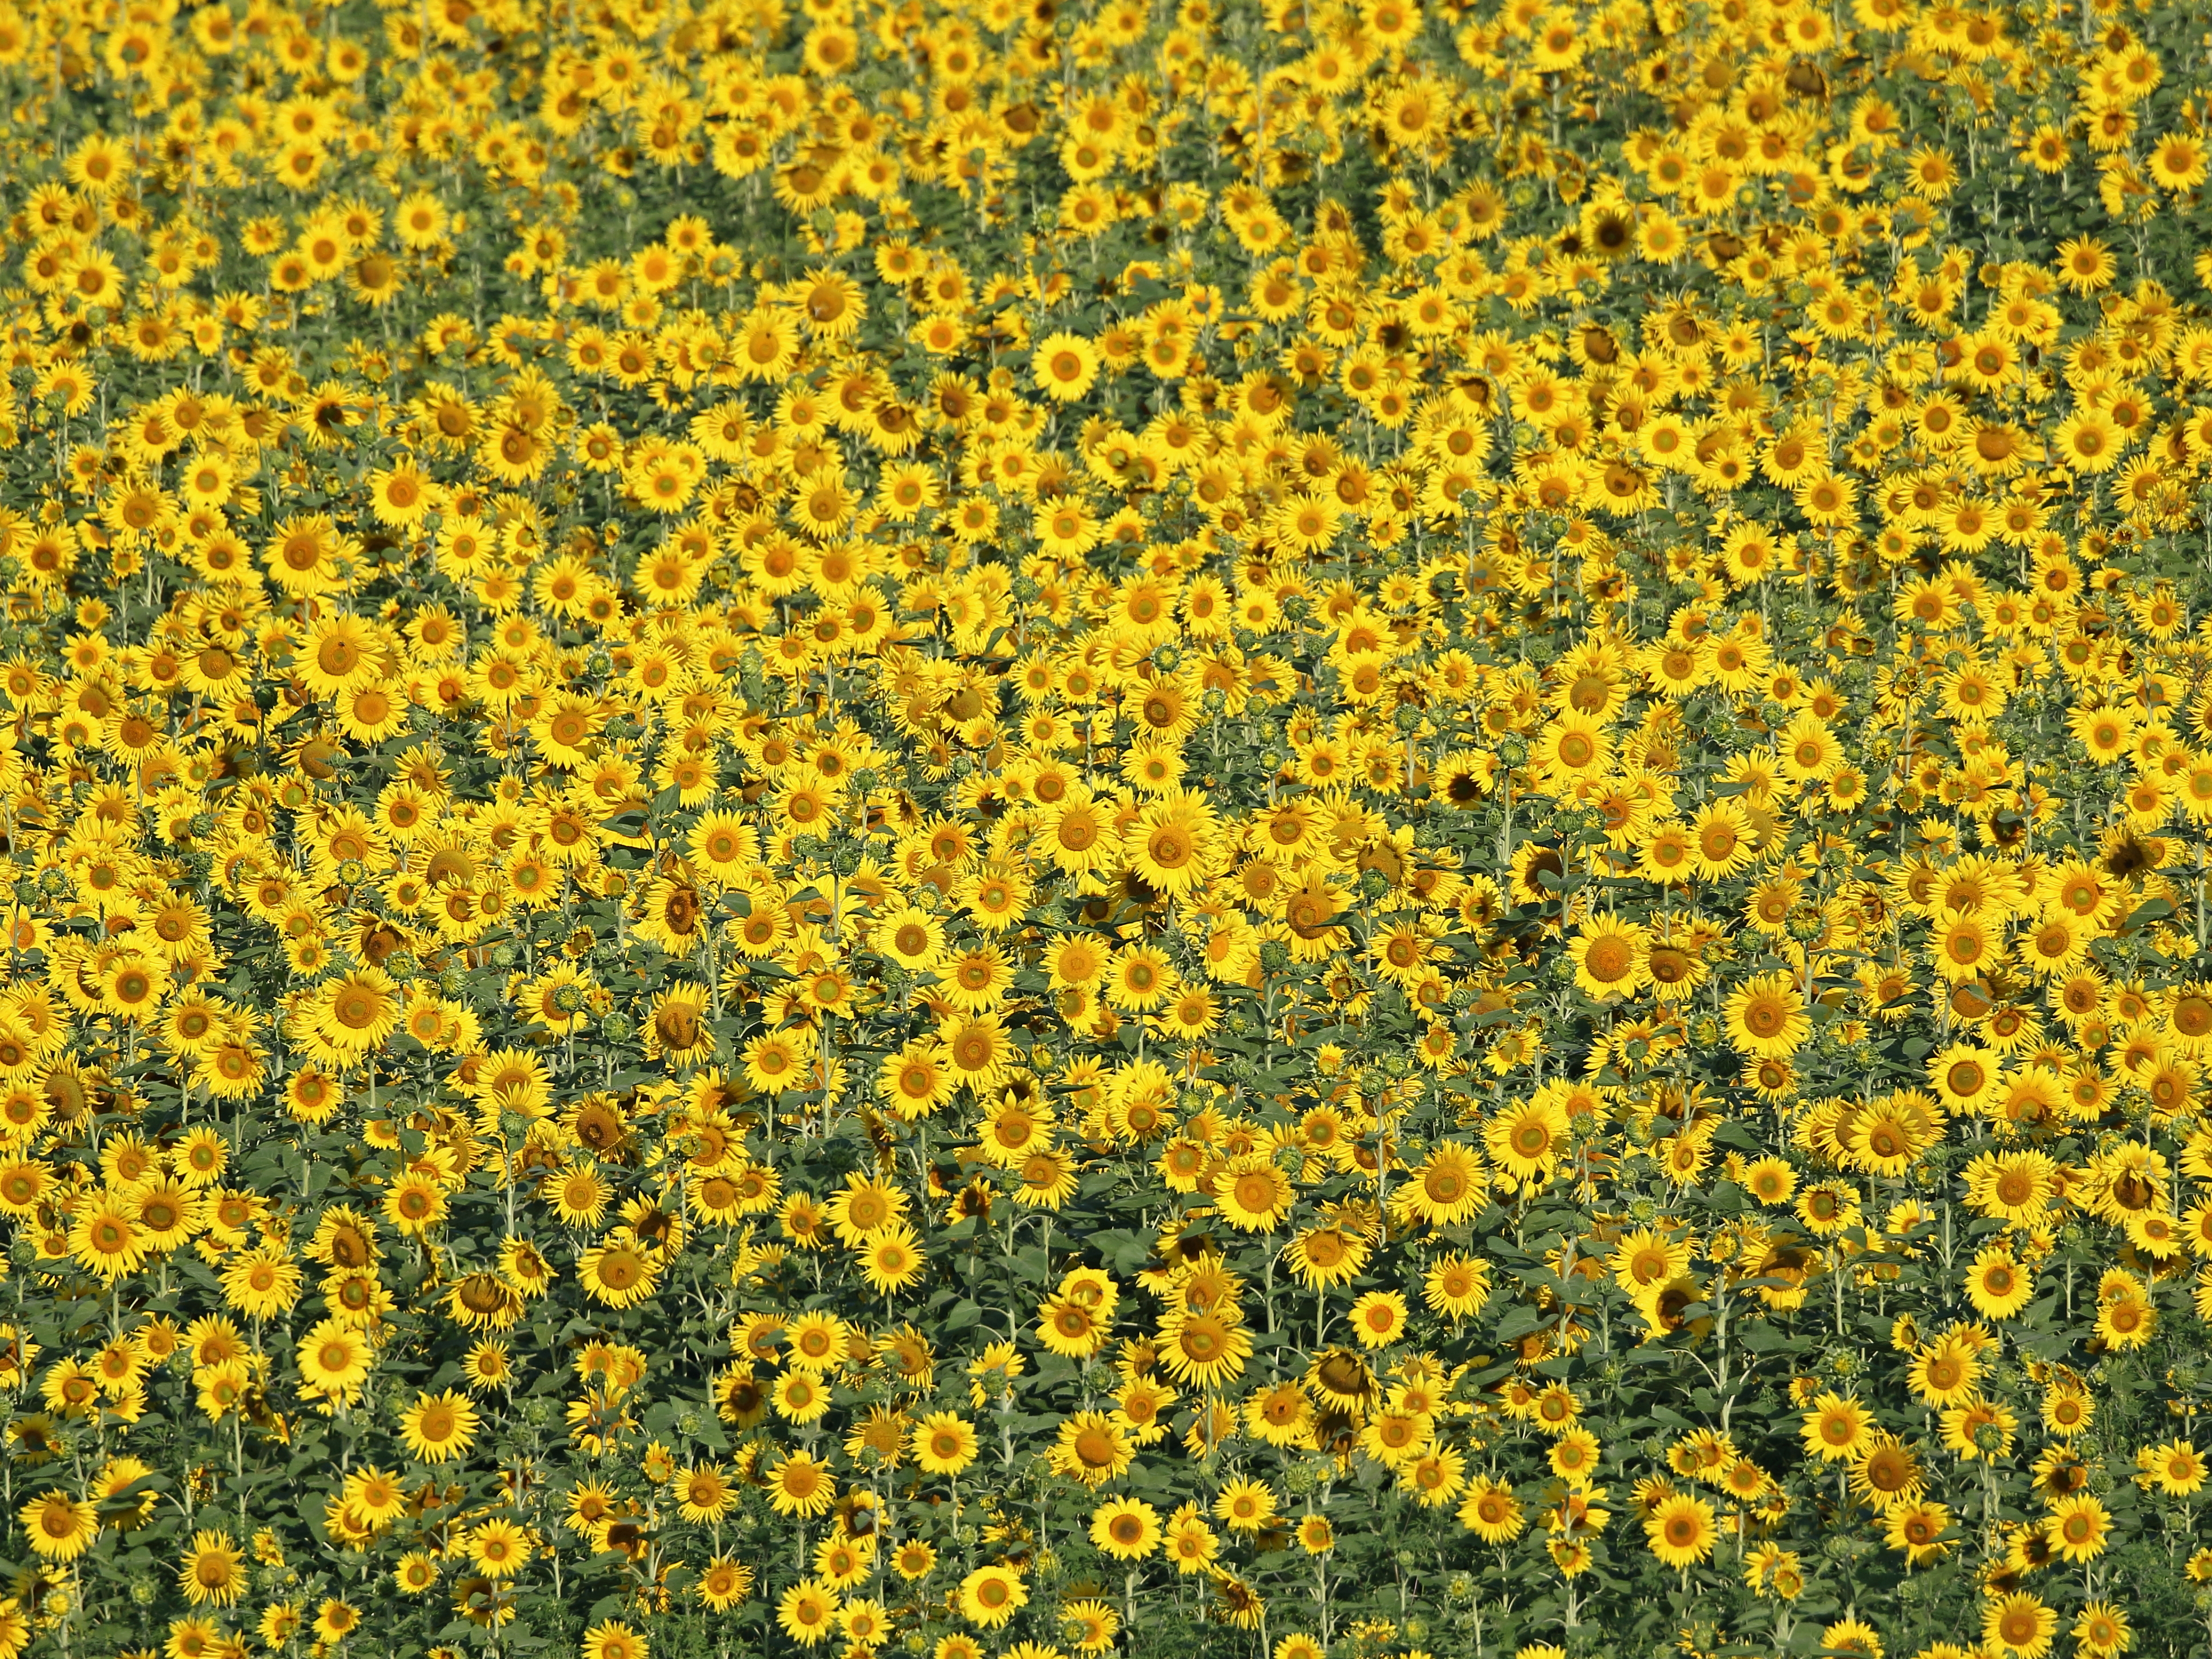 Sunflowers_Dingel_SGL095.JPG